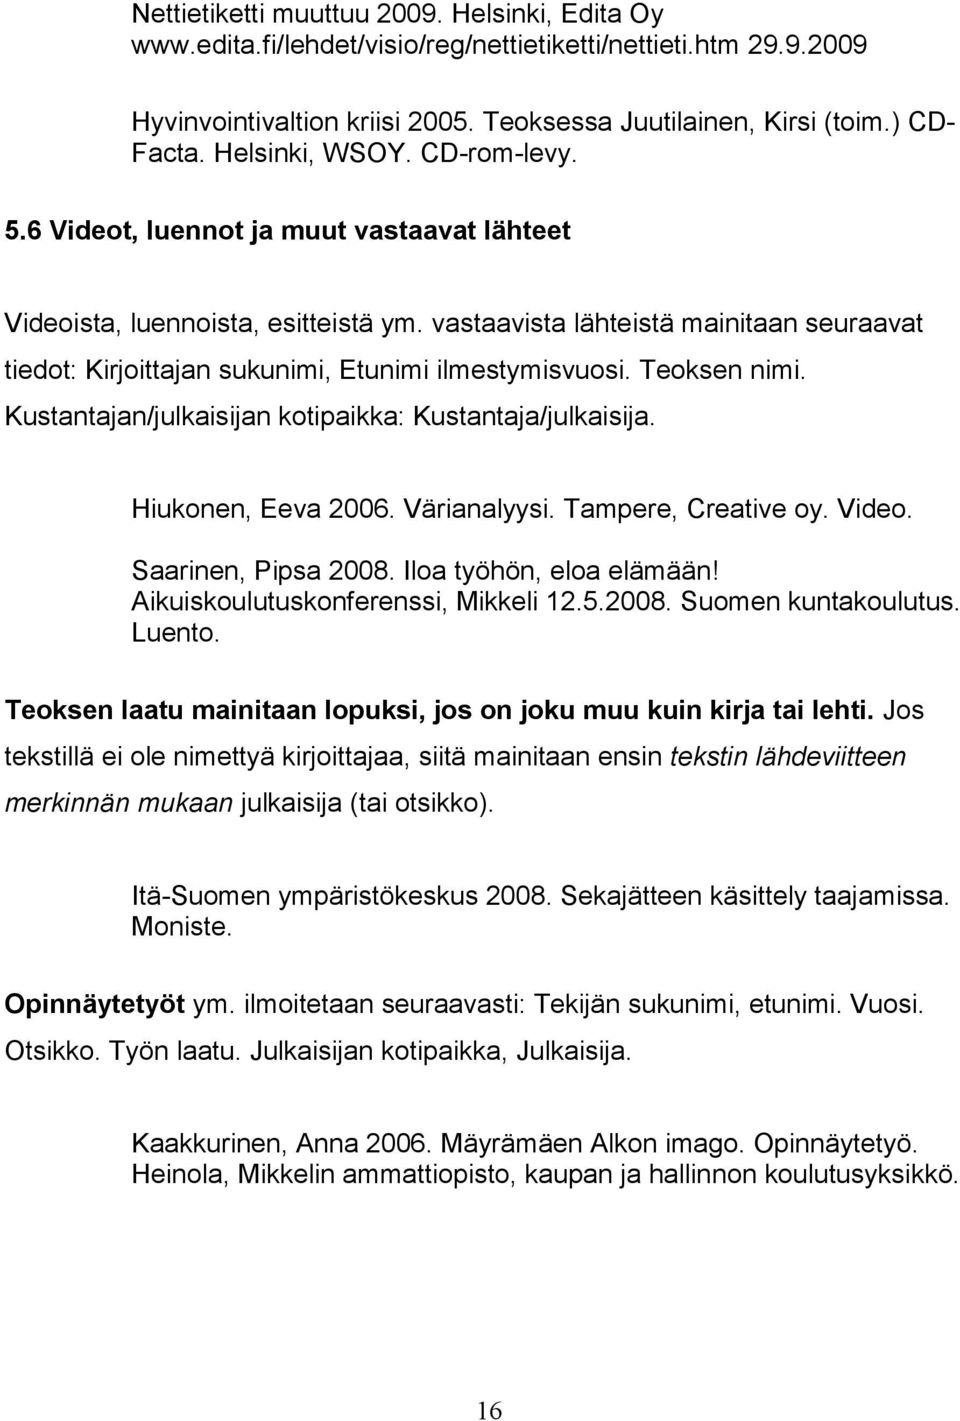 vastaavista lähteistä mainitaan seuraavat tiedot: Kirjoittajan sukunimi, Etunimi ilmestymisvuosi. Teoksen nimi. Kustantajan/julkaisijan kotipaikka: Kustantaja/julkaisija. Hiukonen, Eeva 2006.